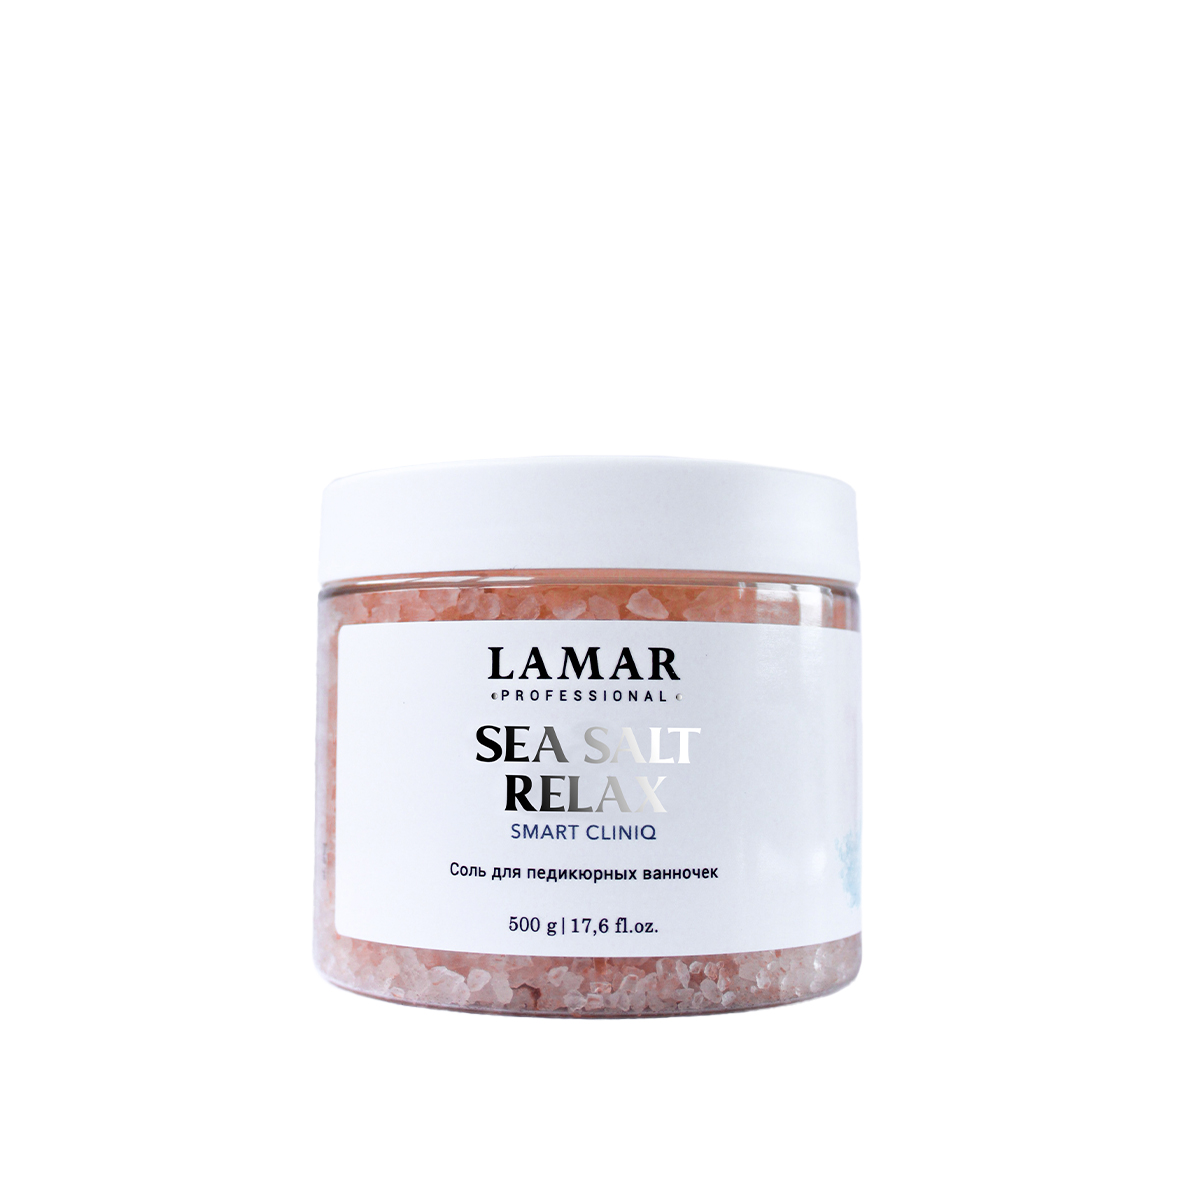 Соль для педикюрных ванночек Lamar Professional Sea salt relax 500 г крем парафин aravia professional french lavender для парафинотерапии 300 мл